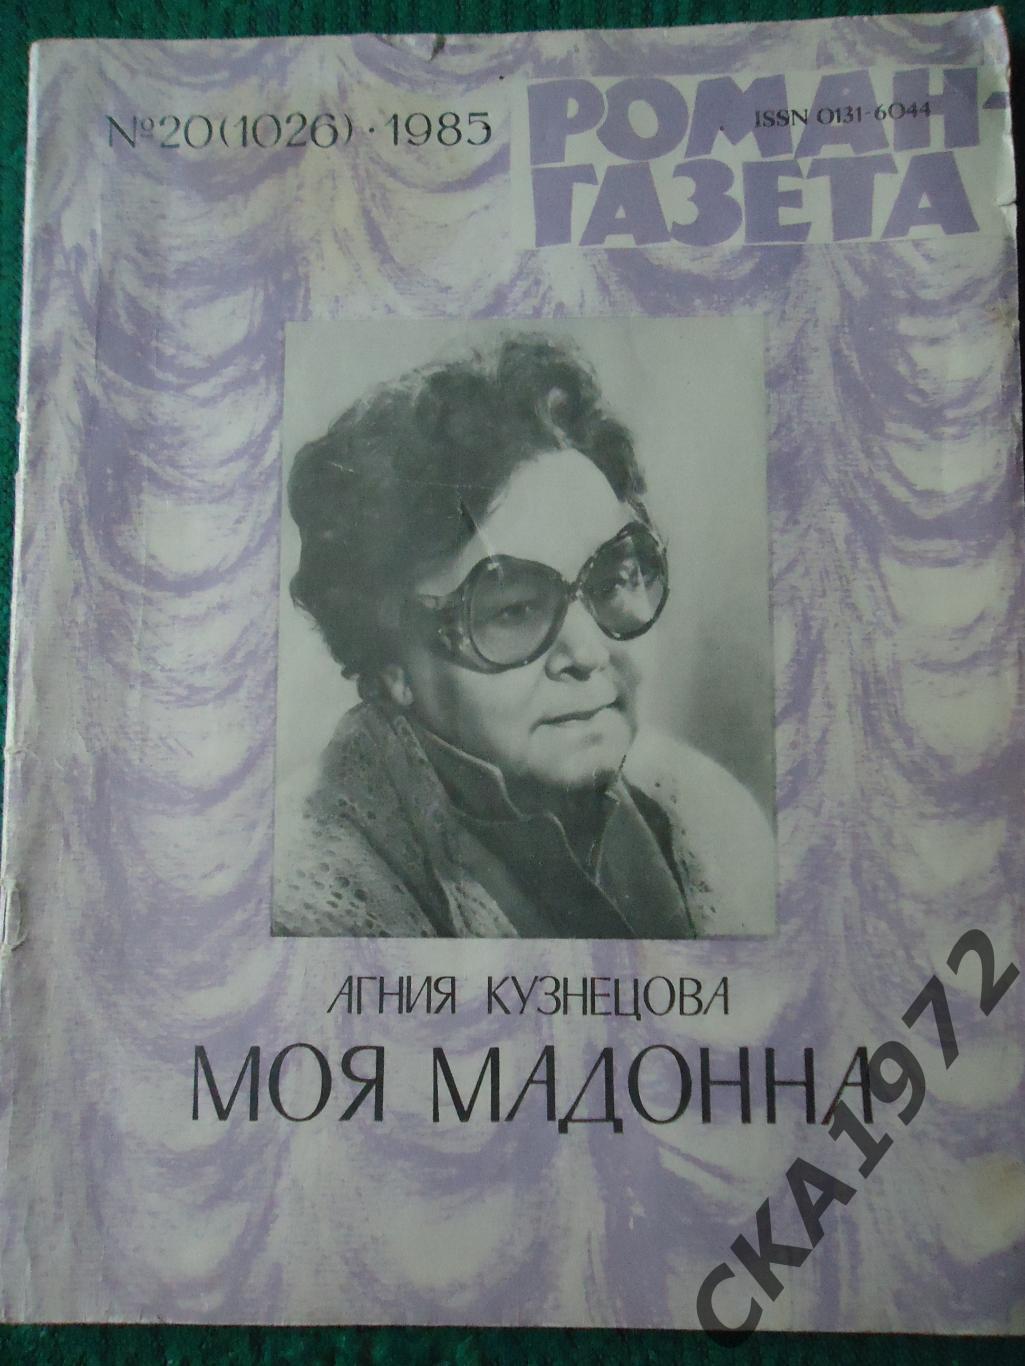 роман-газета № 20 1985 Агния Кузнецова Моя Мадонна